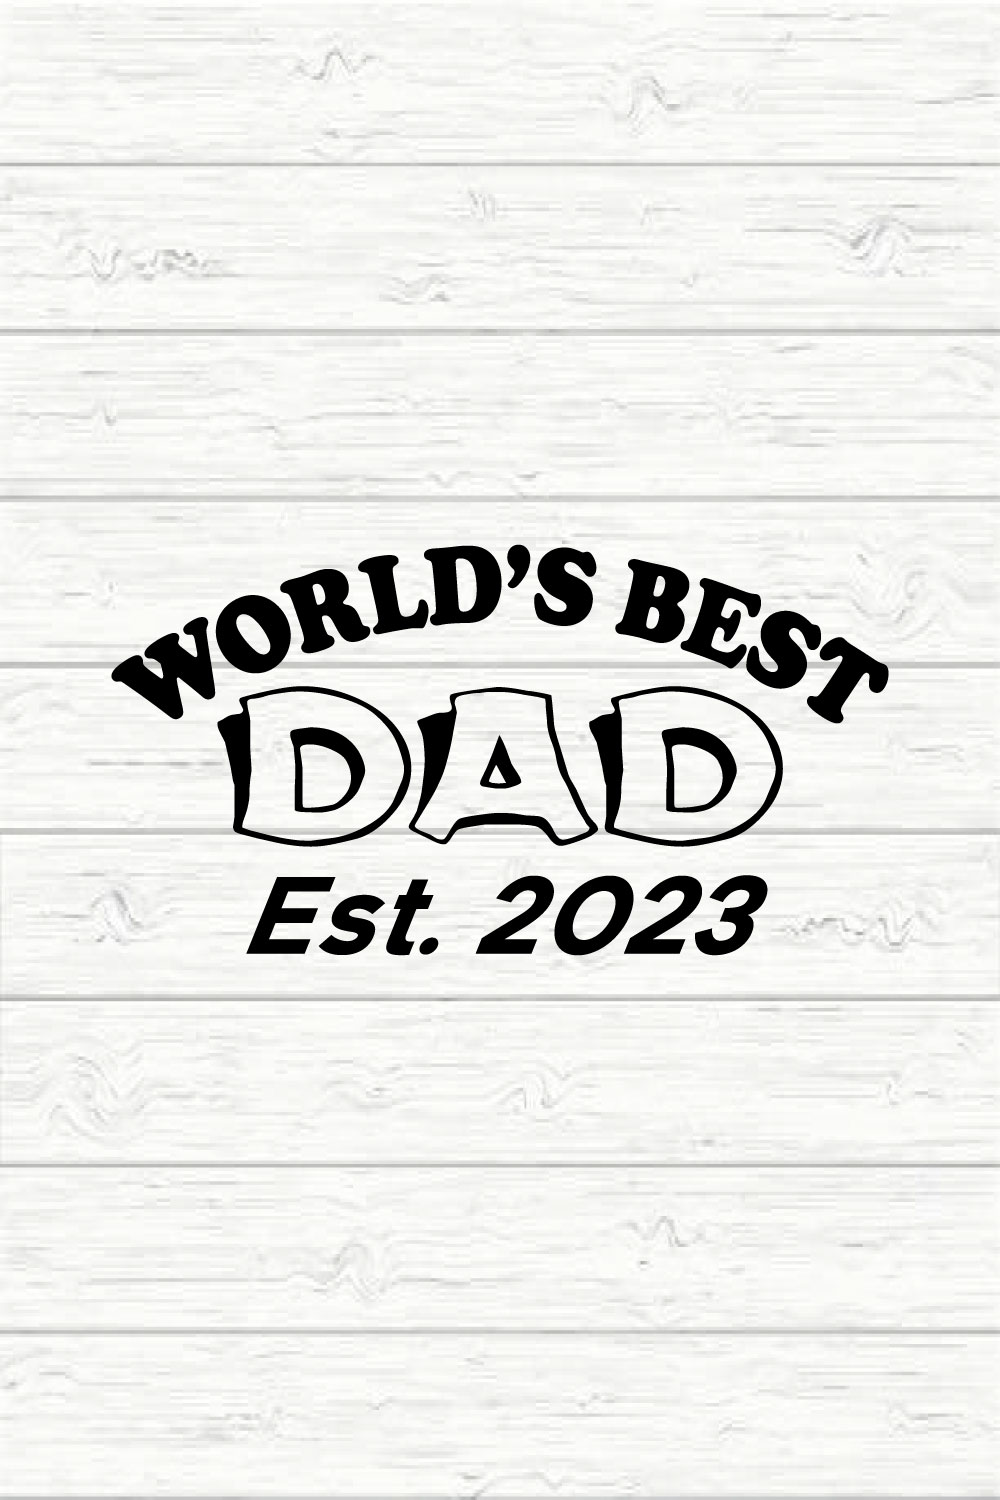 World's Best Dad Est 2023 pinterest preview image.